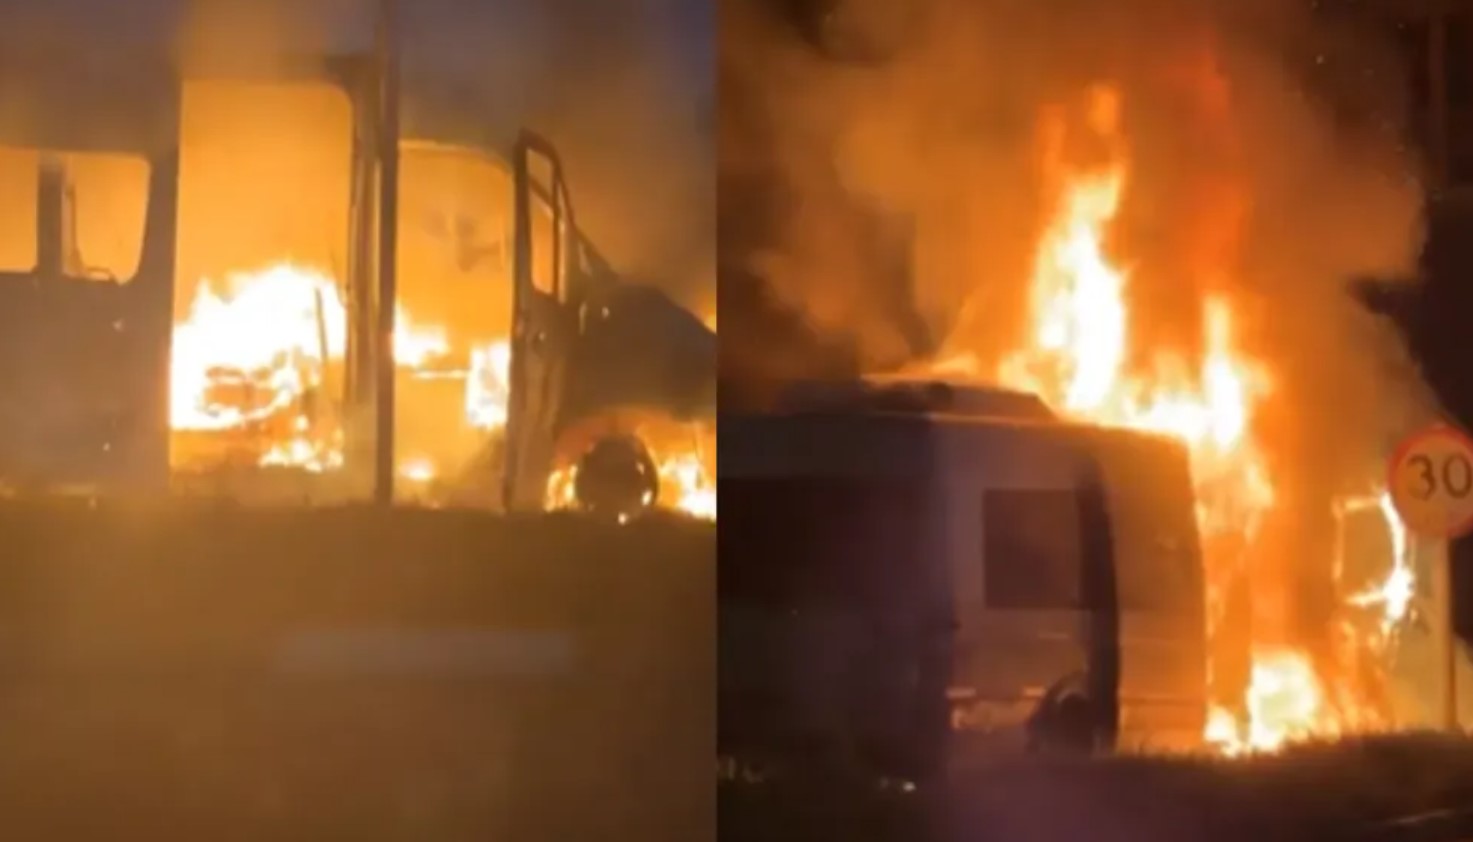 Uma van de uma famosa banda de forró pegou fogo na rodovia BA-001, próximo à cidade de Porto Seguro, na Bahia. FOTO: internet.